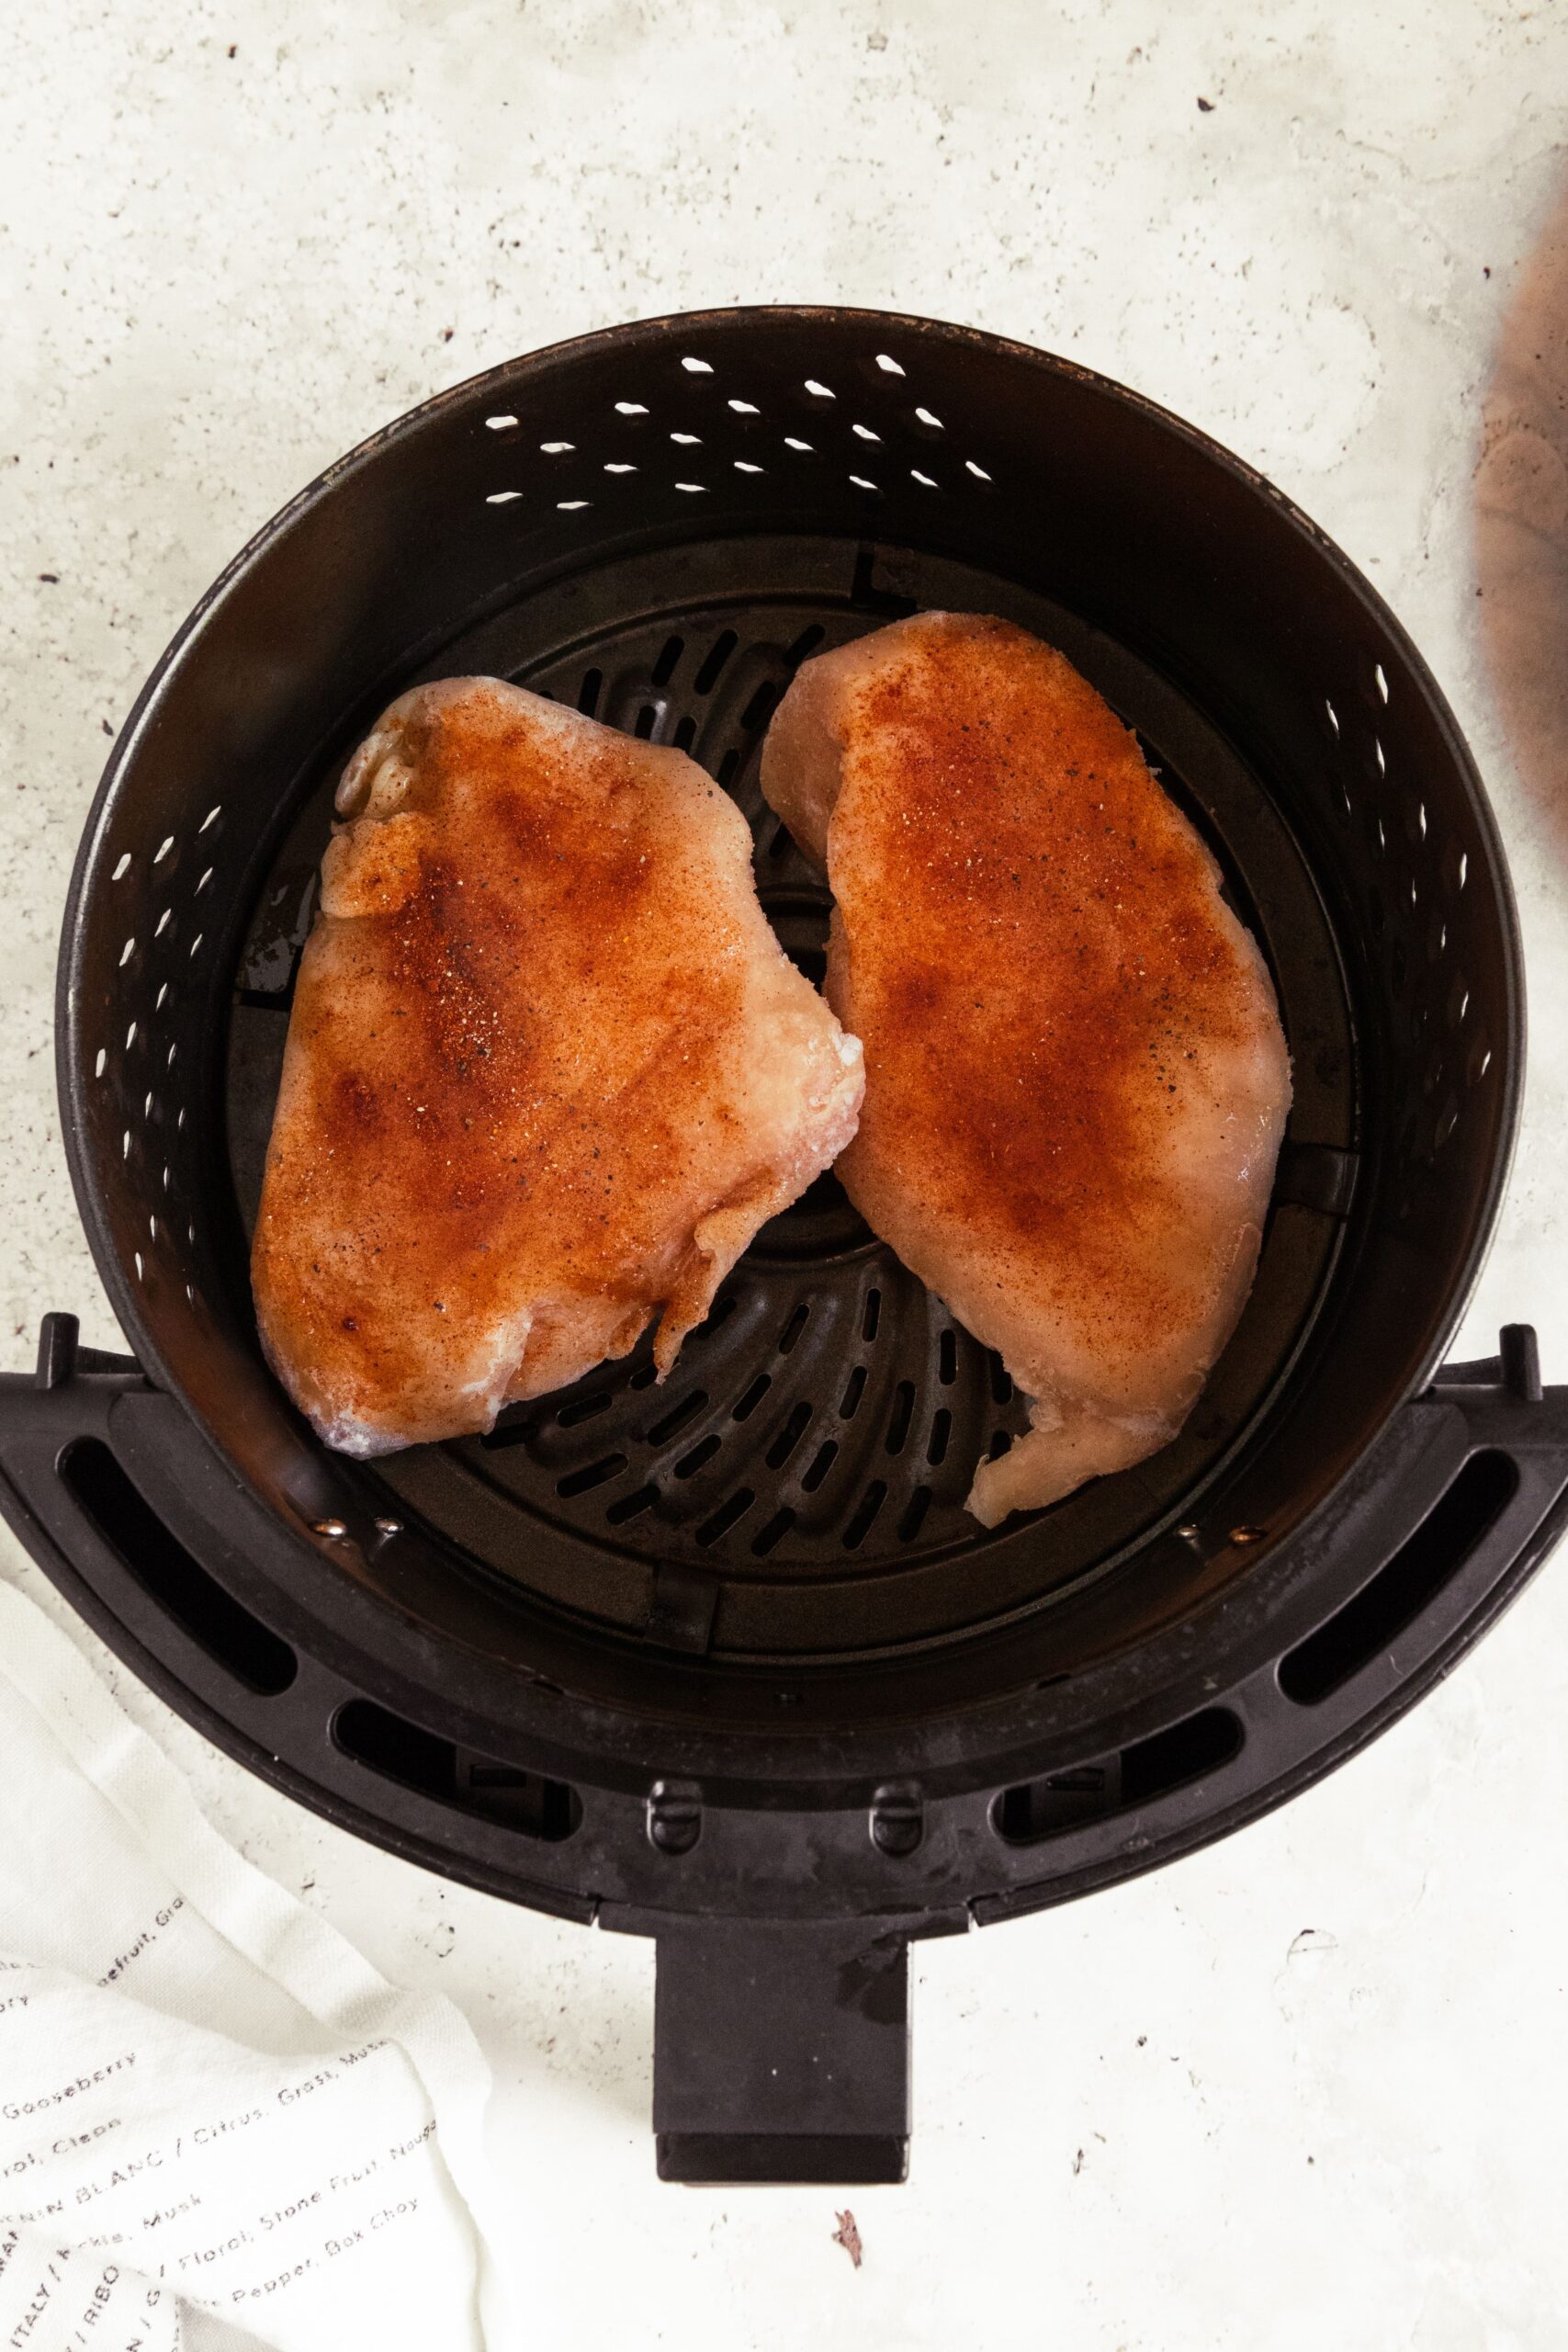 2 seasoned chicken breasts in an air fryer